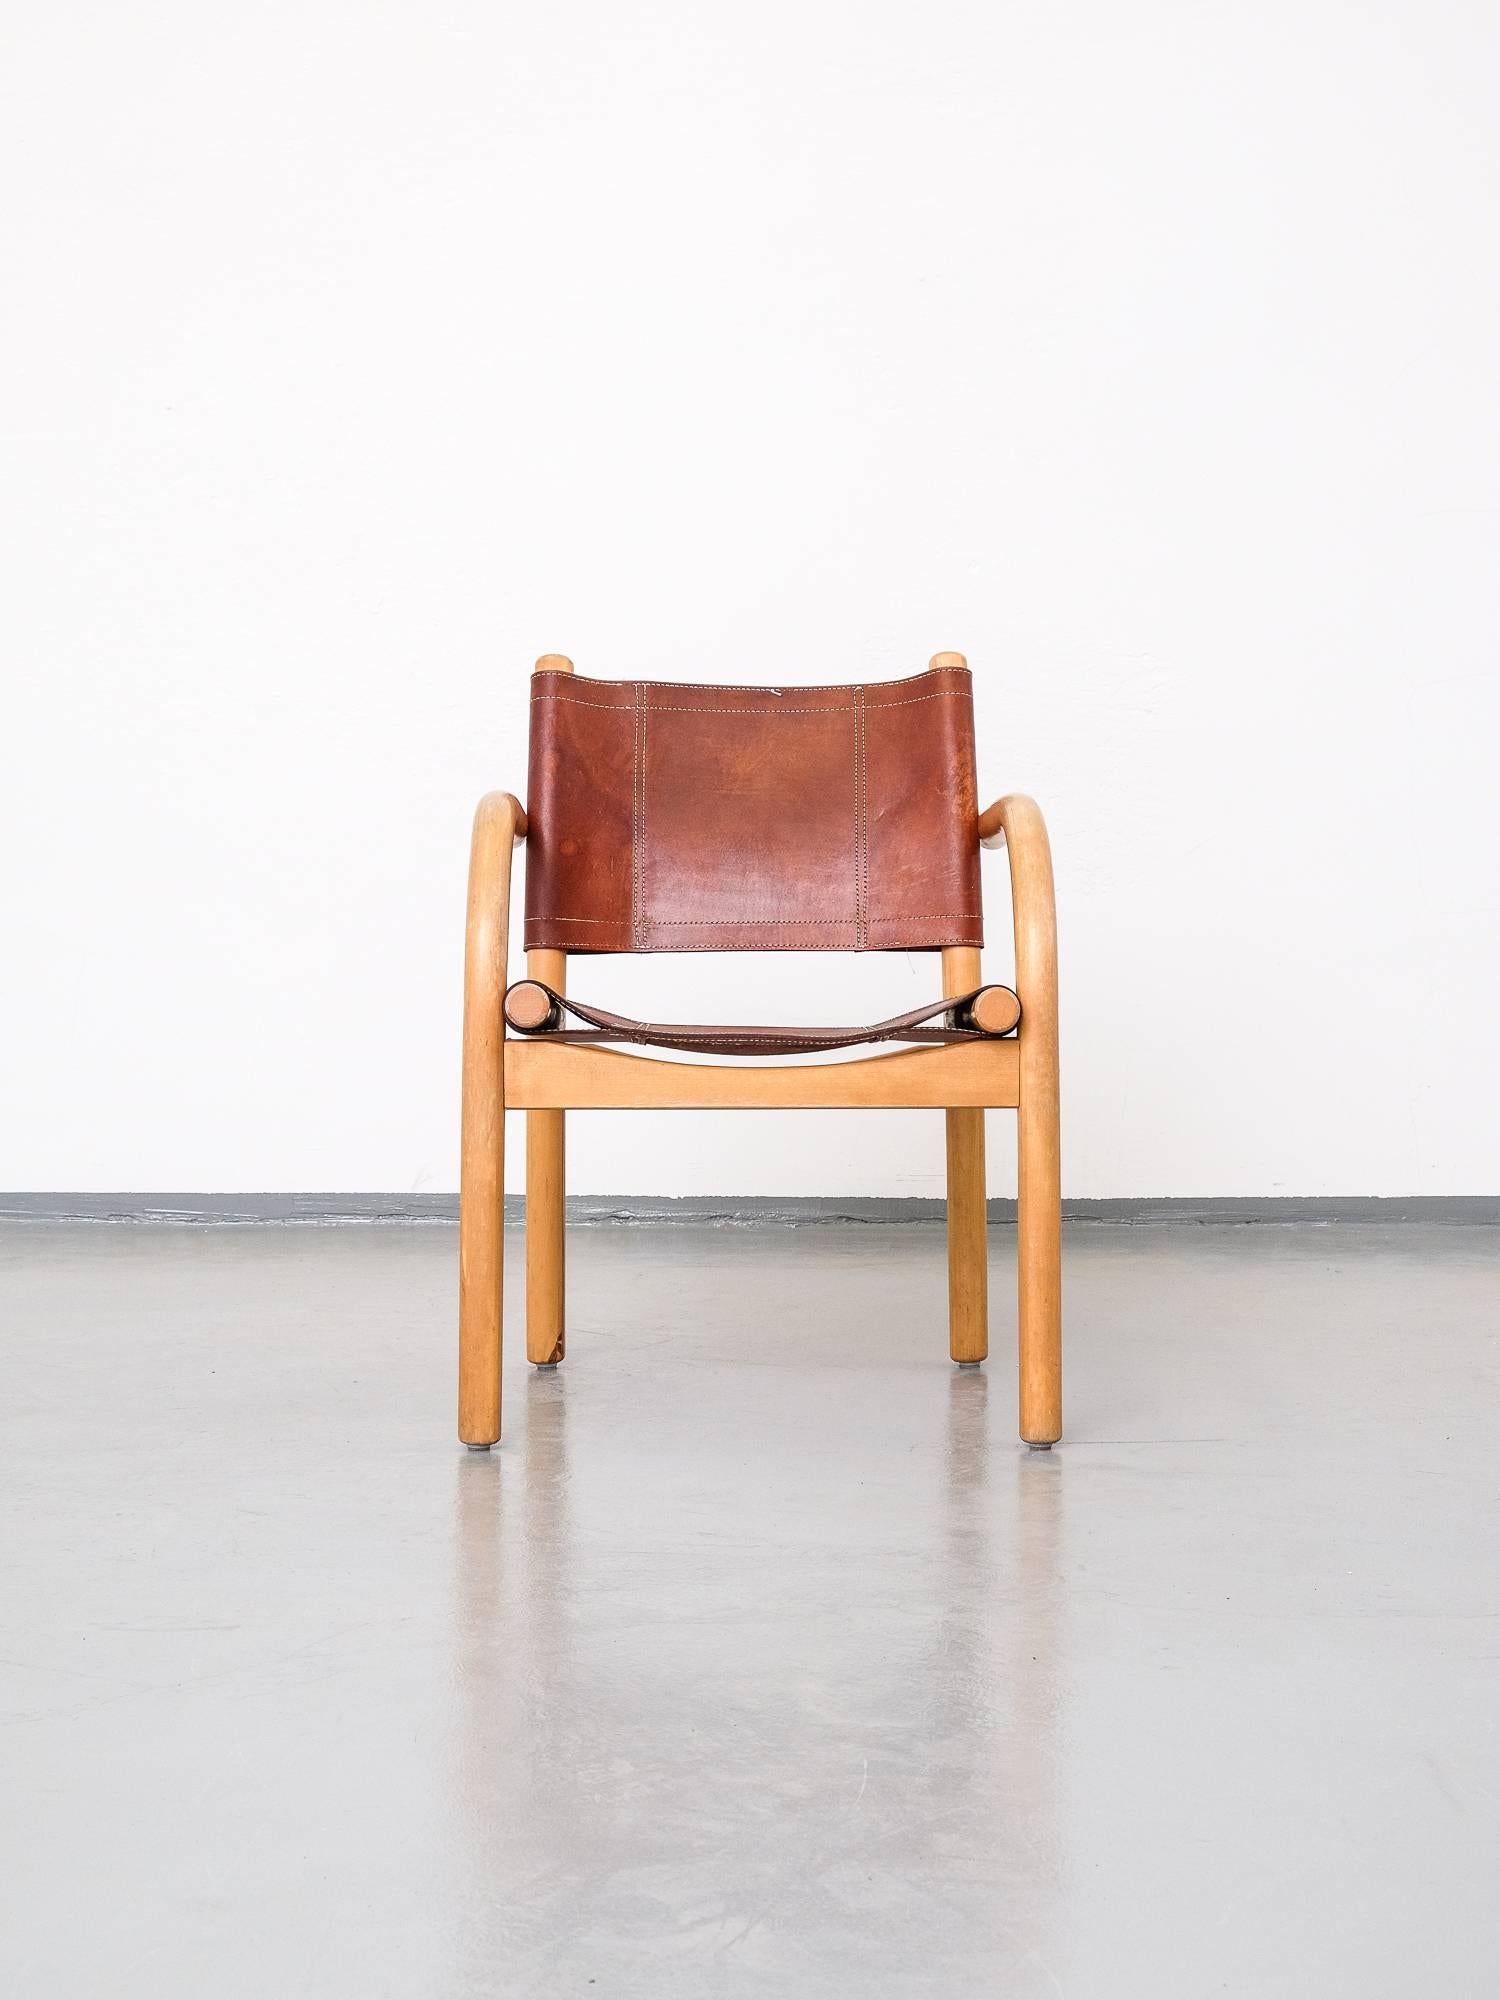 Finnish Scandinavian Modern 1970s Safari Chair 411 by Ben af Schultén for Artek